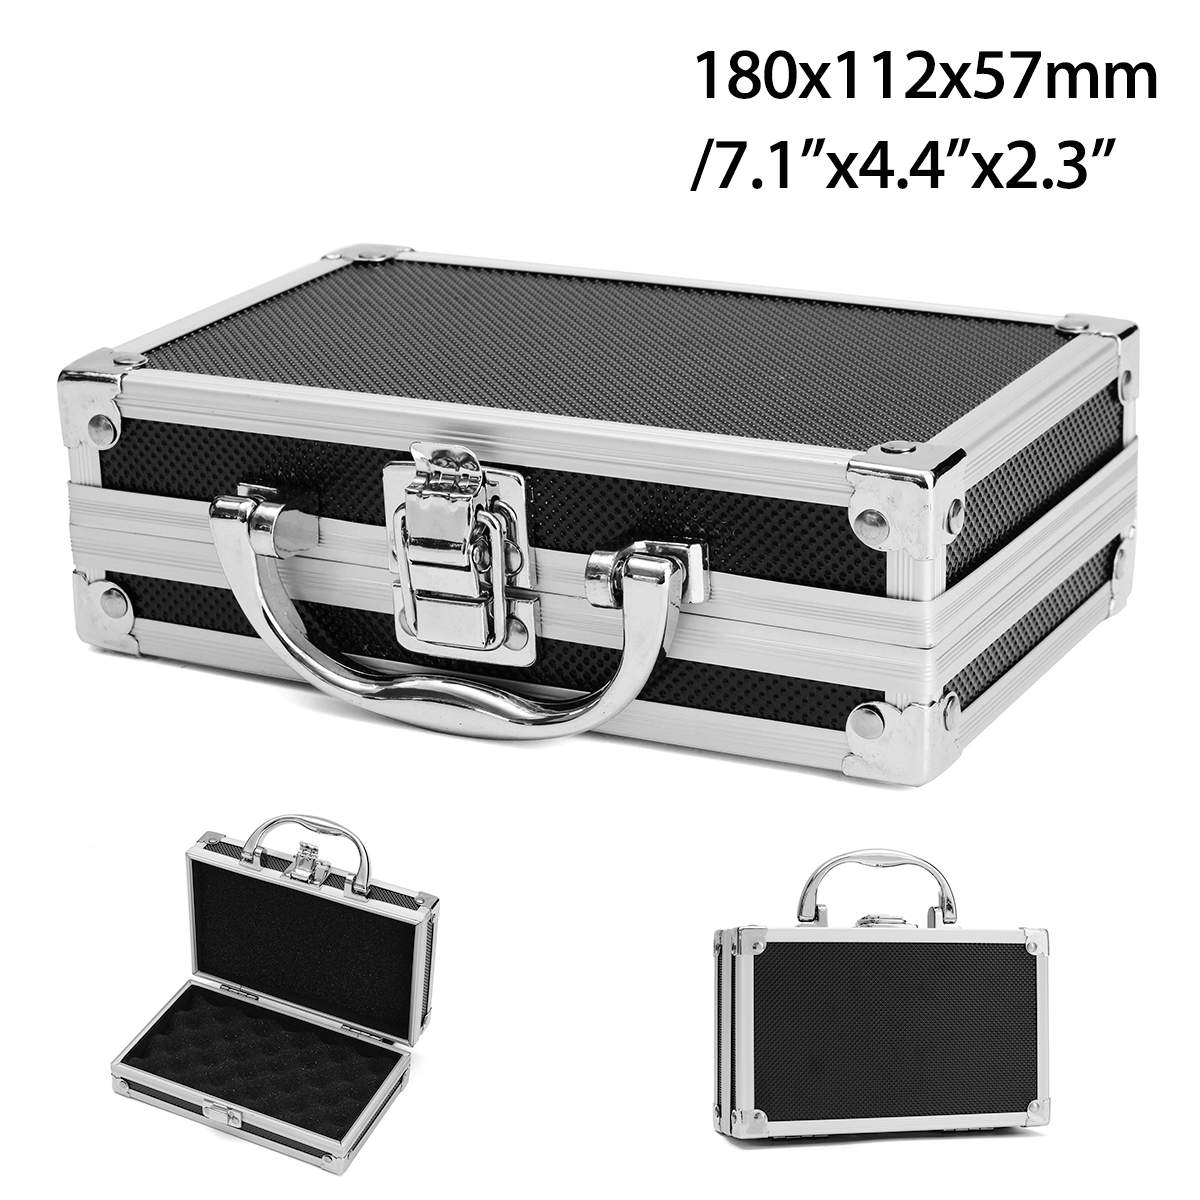 Doersupp Aluminium Gereedschapskist Draagbare Kleine Handvat Opslag Koffer Reizen Bagage Organizer Case Handheld Organizer